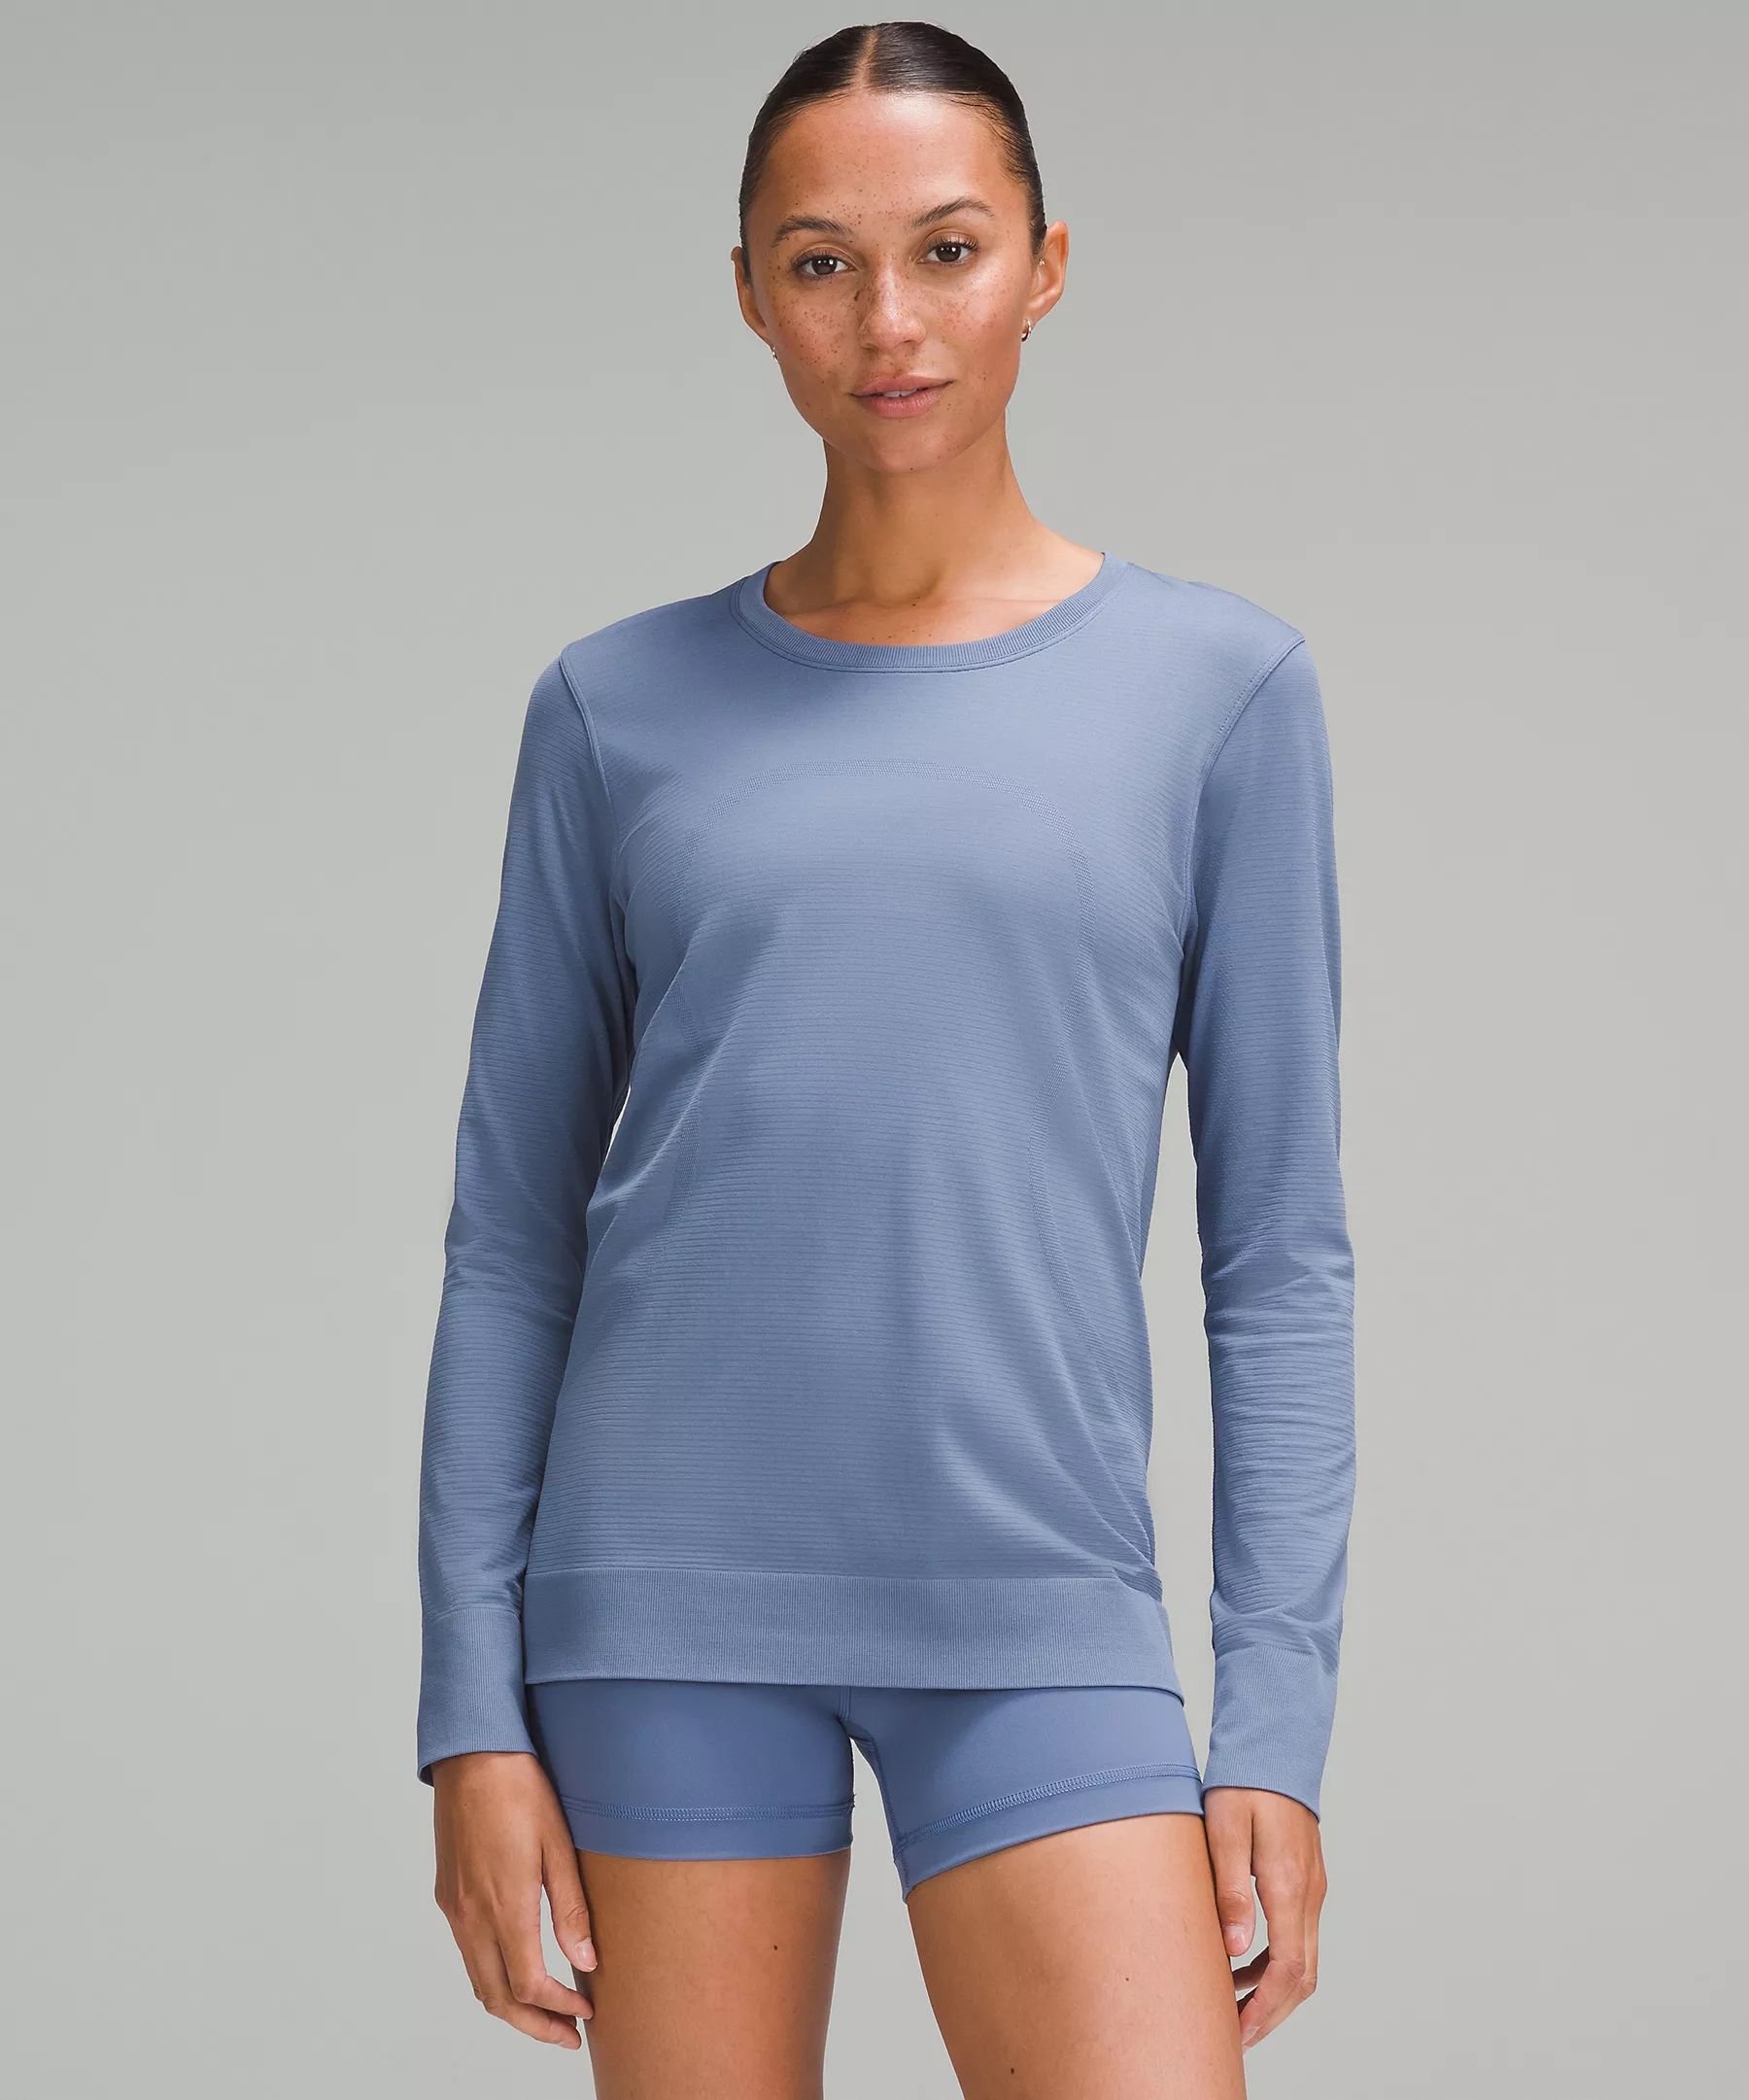 Swiftly Relaxed Long-Sleeve Shirt | Lululemon (US)